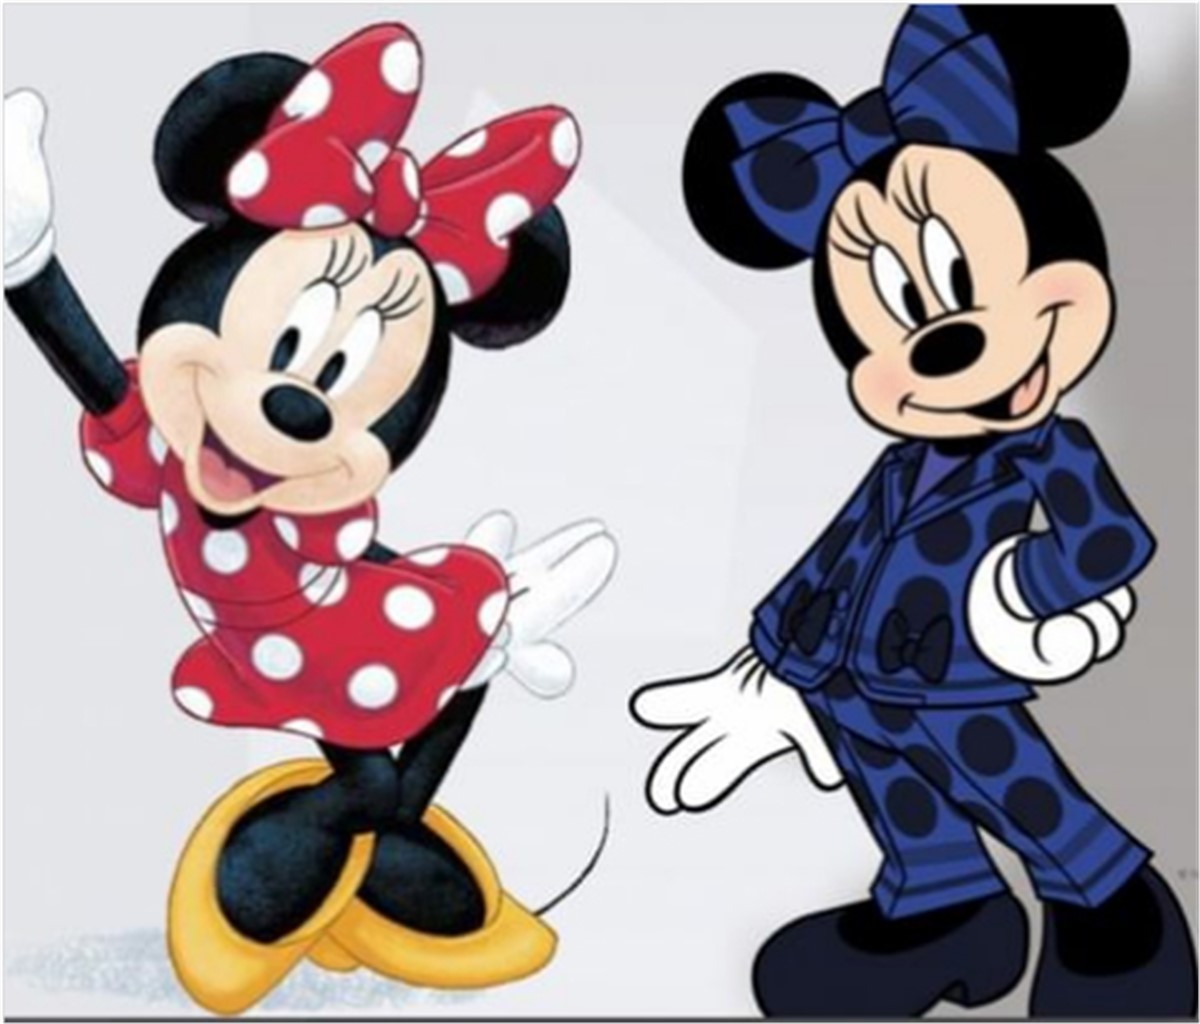 Nueva versión de Minnie por Disney